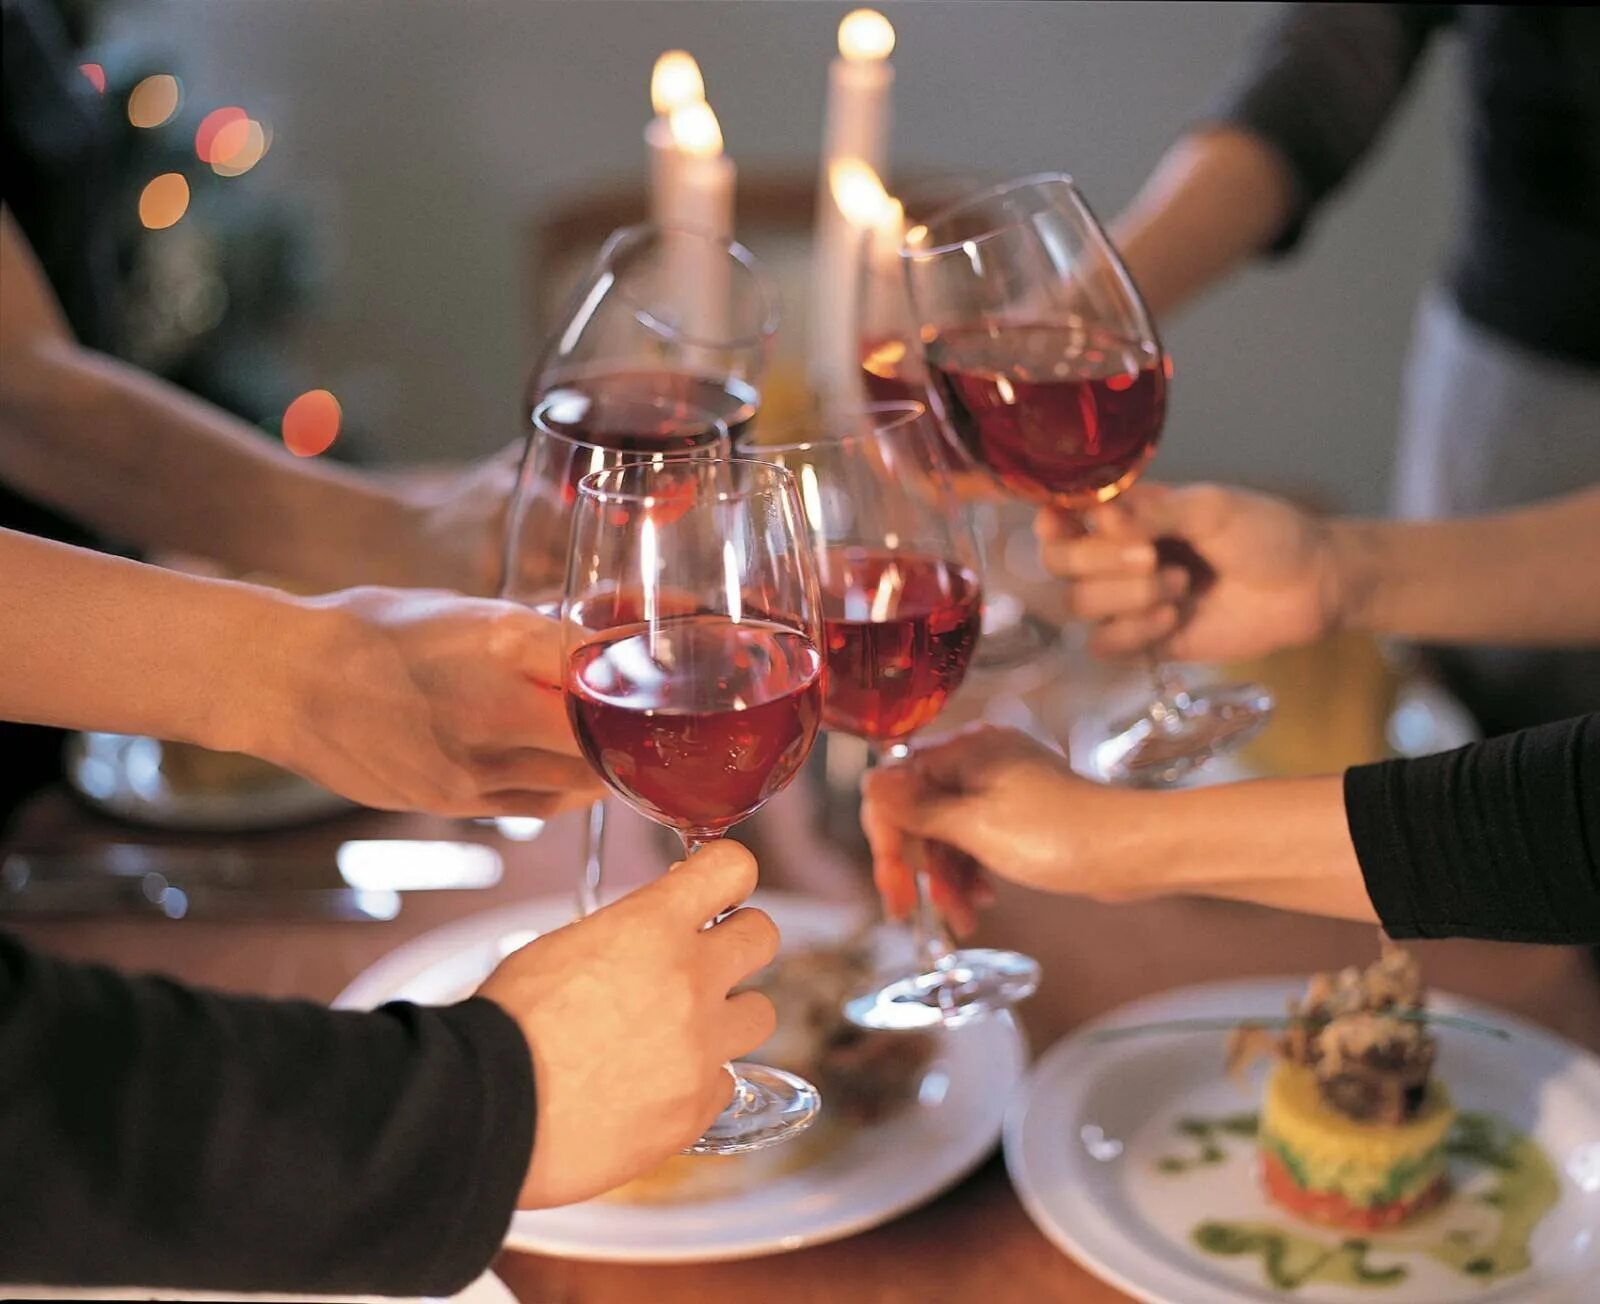 Юбиляр поздравляет гостей. Застолье. Праздничное застолье. Бокалы праздник. Праздничный стол с вином.